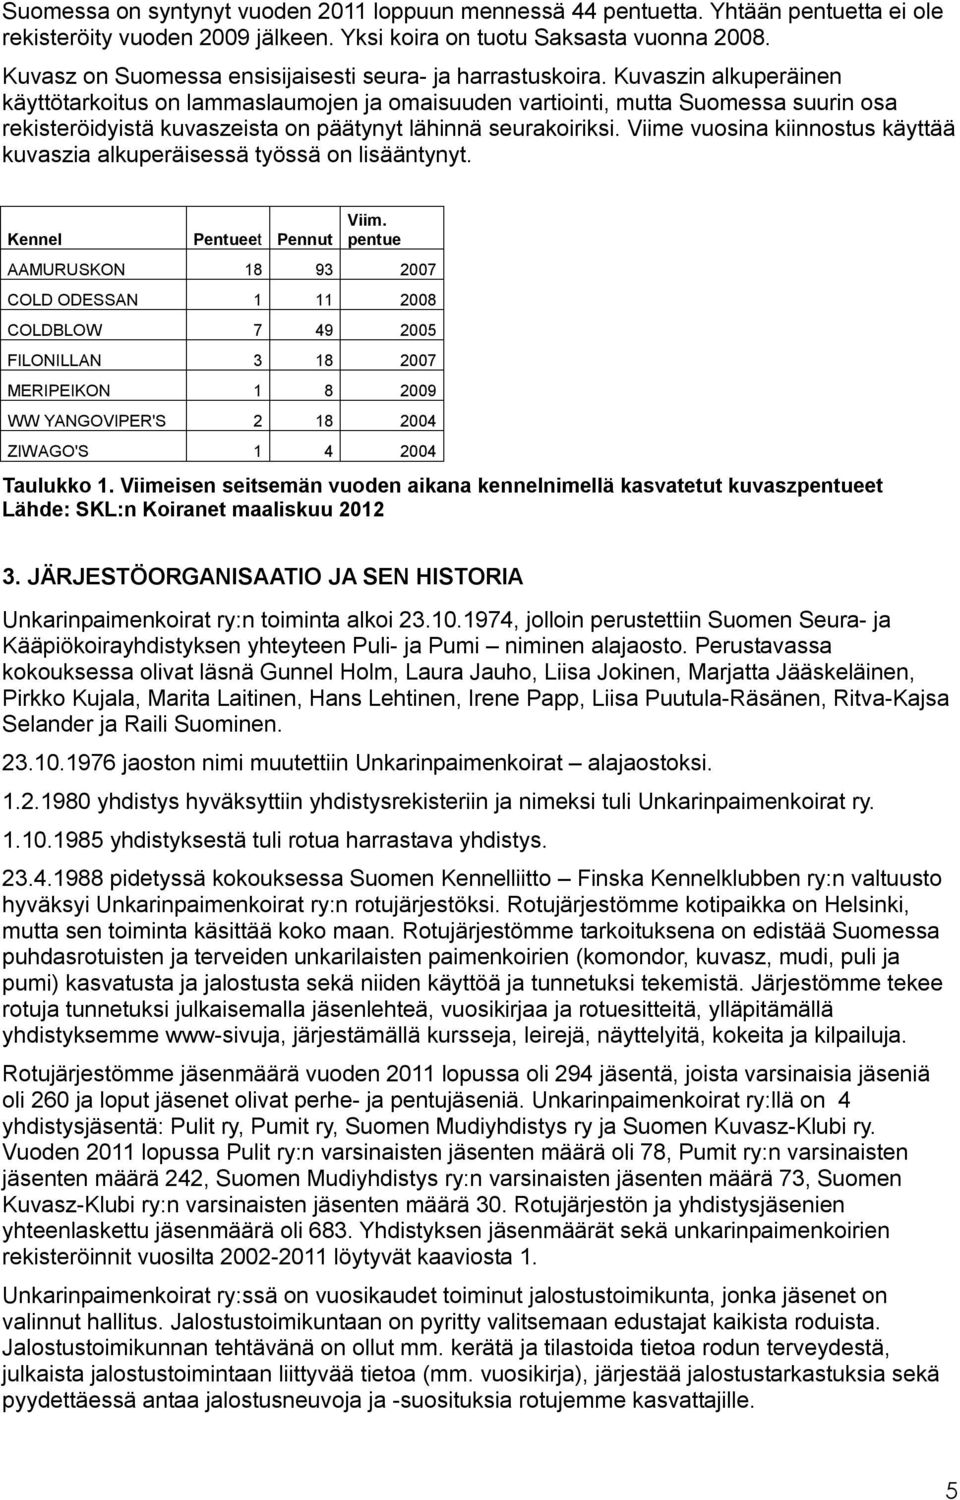 Kuvaszin alkuperäinen käyttötarkoitus on lammaslaumojen ja omaisuuden vartiointi, mutta Suomessa suurin osa rekisteröidyistä kuvaszeista on päätynyt lähinnä seurakoiriksi.